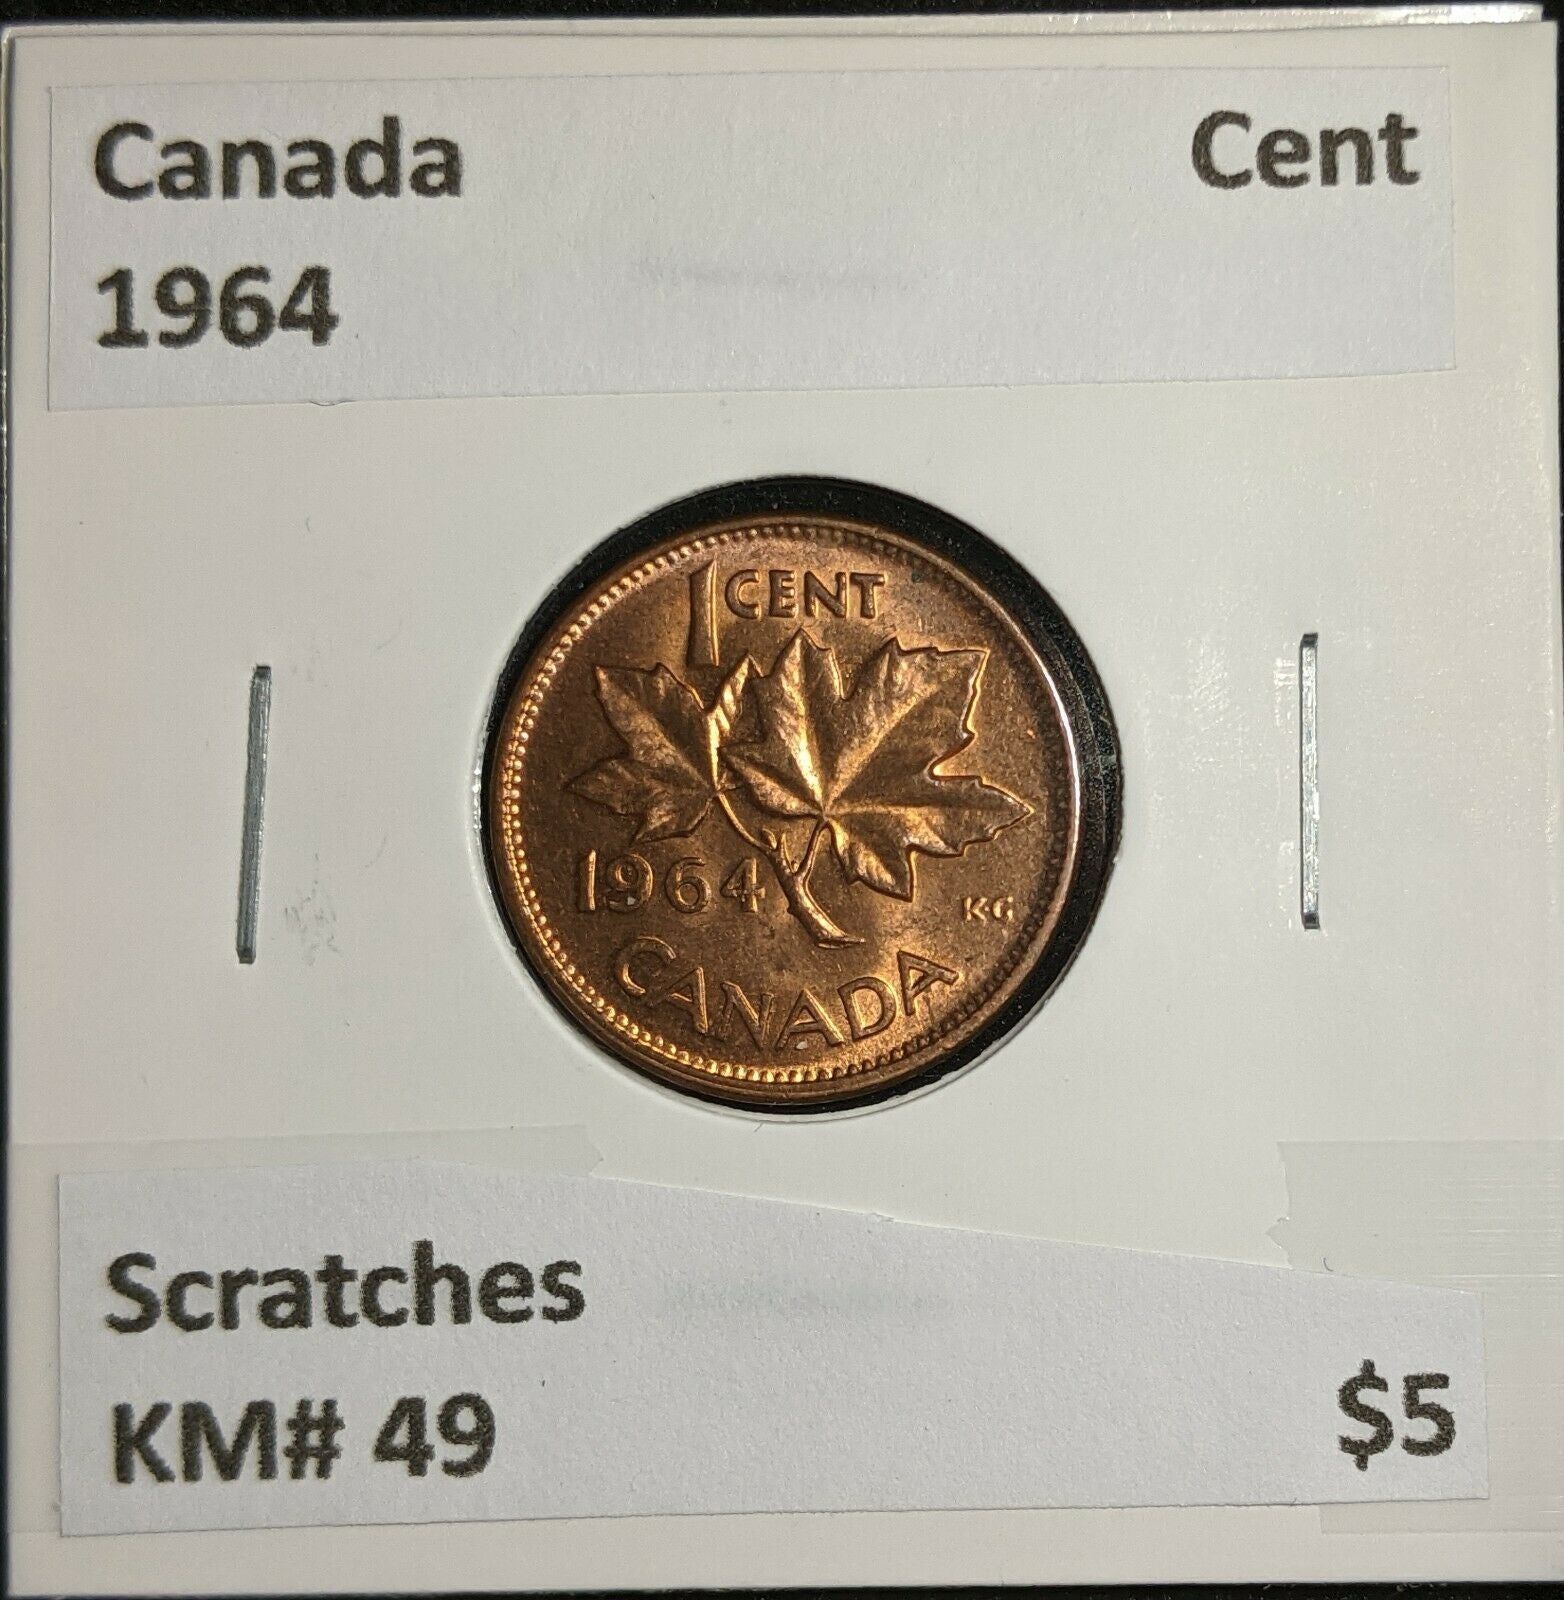 Canada 1964 Cent KM# 49 Scratches #963